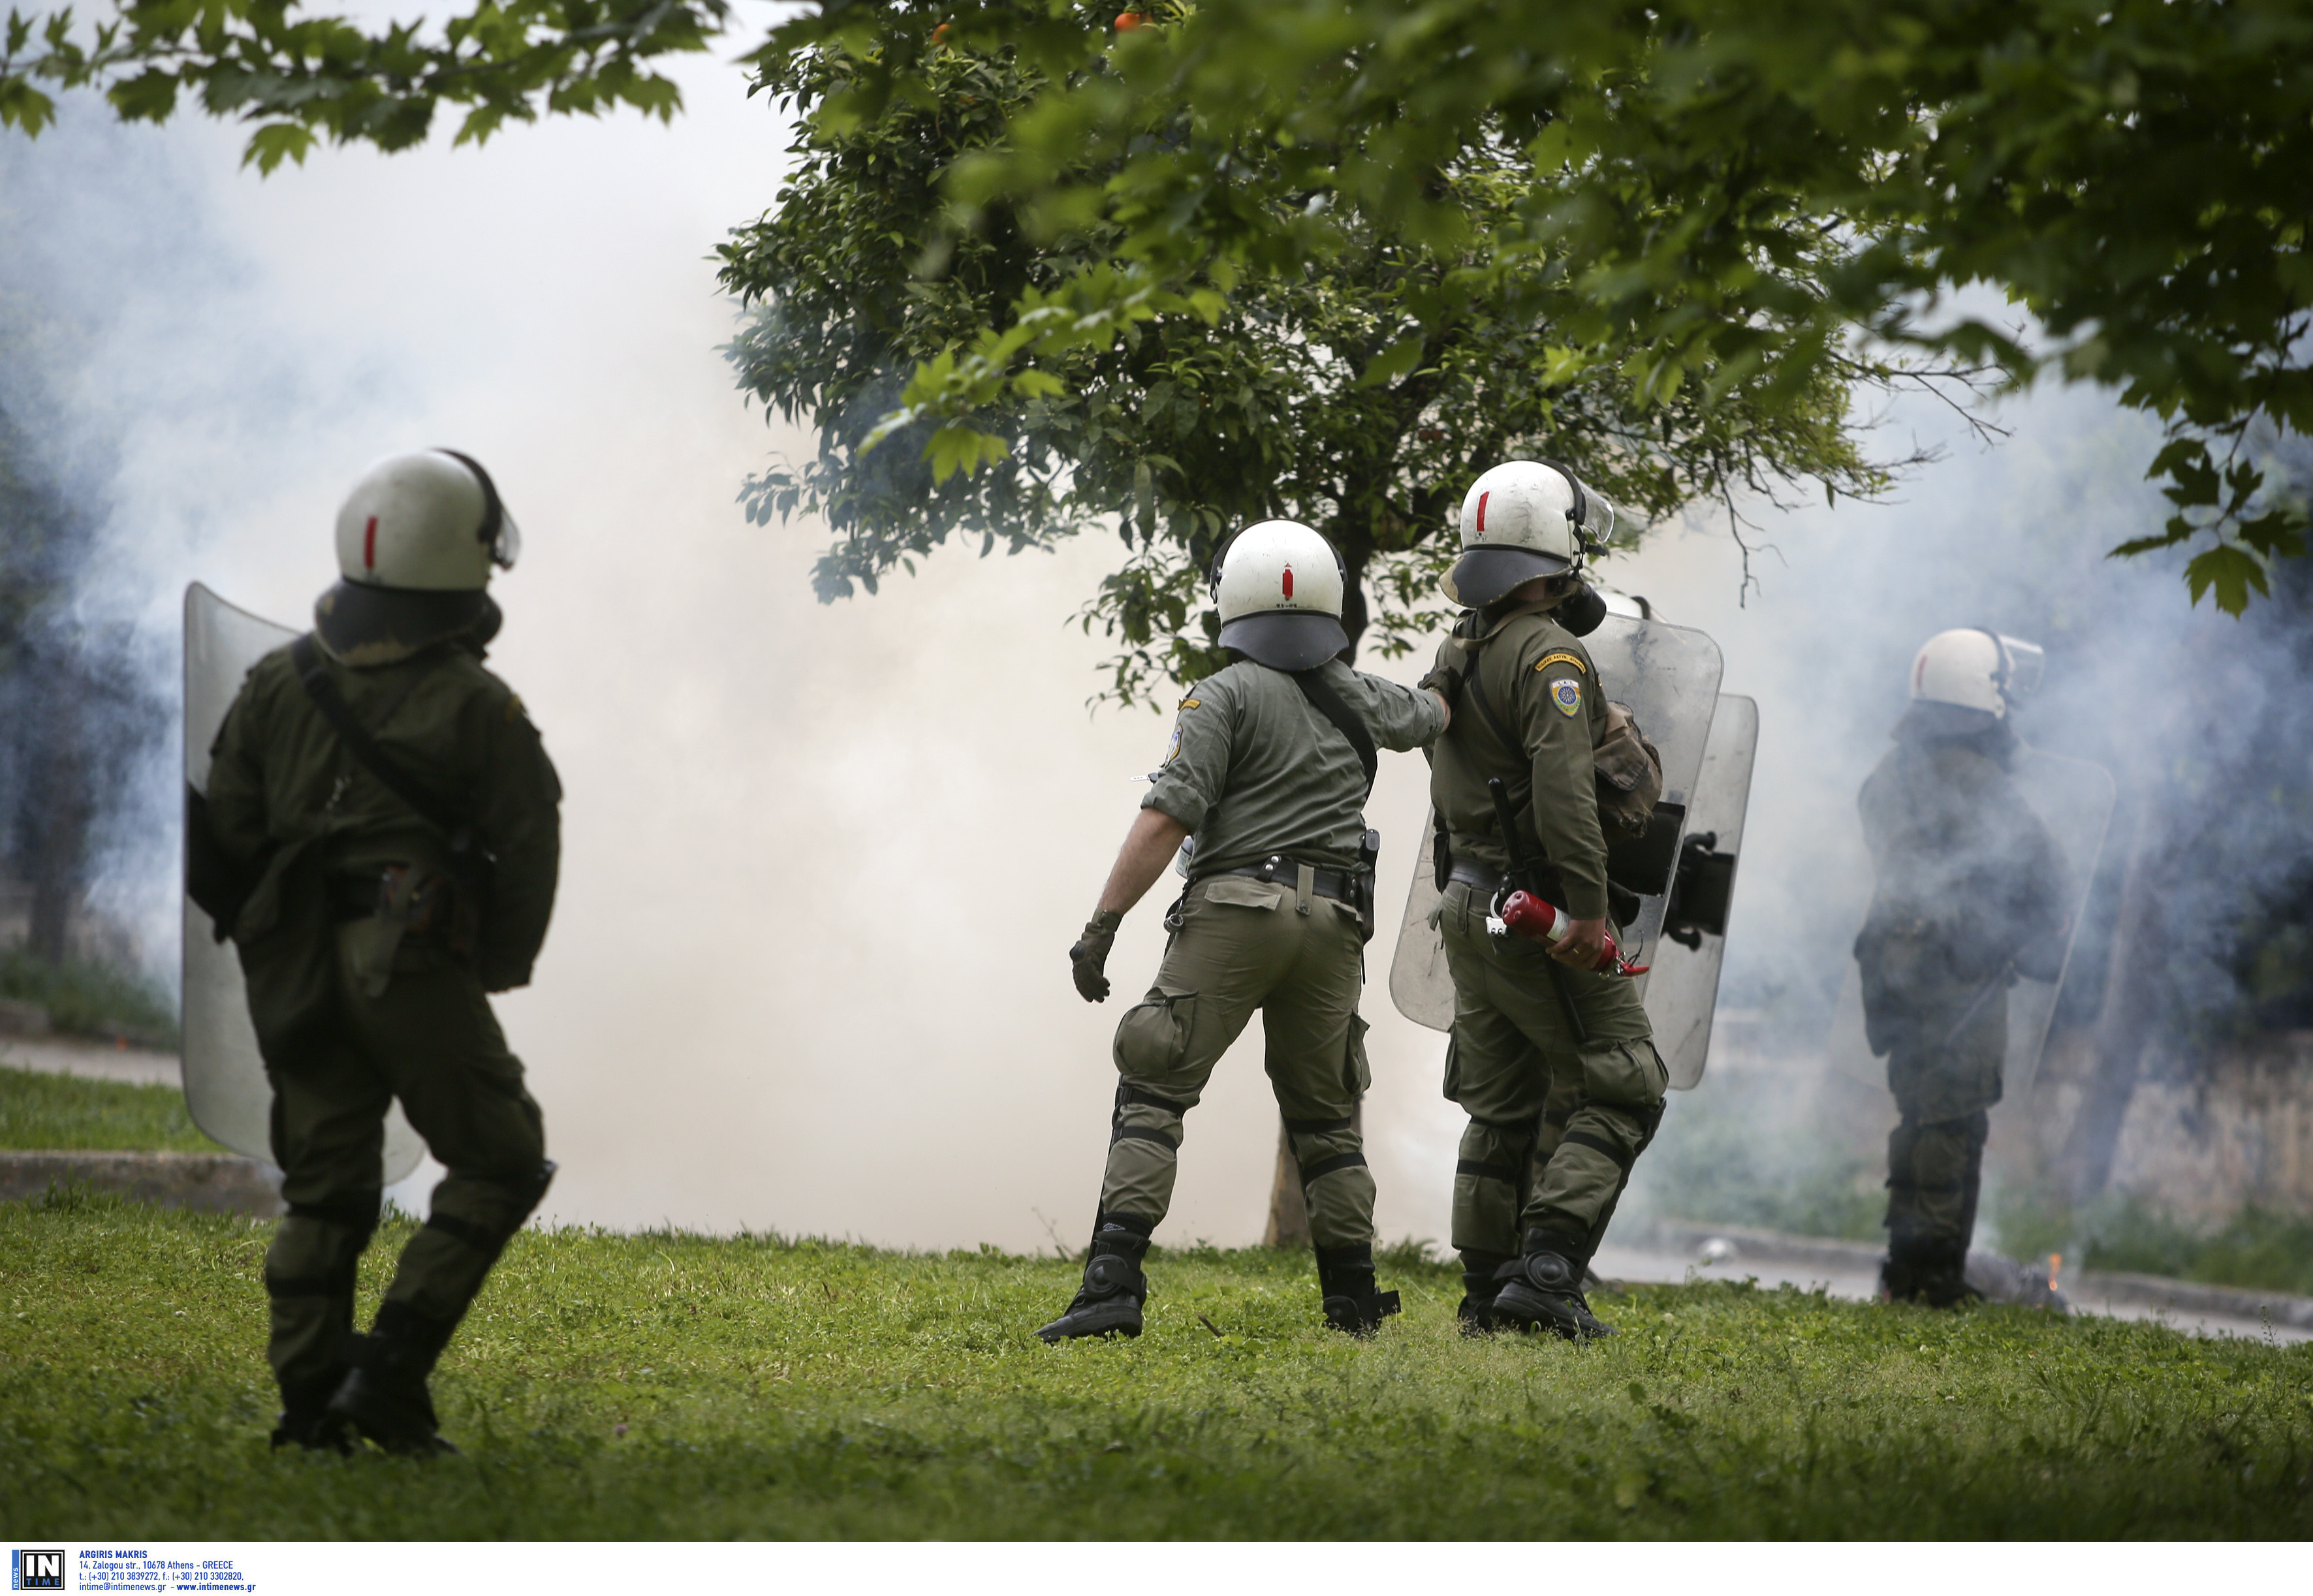 Πεδίο μάχης τα Εξάρχεια ανάμεσα σε αντιεξουσιαστές και αστυνομία – Μολότοφ και χημικά